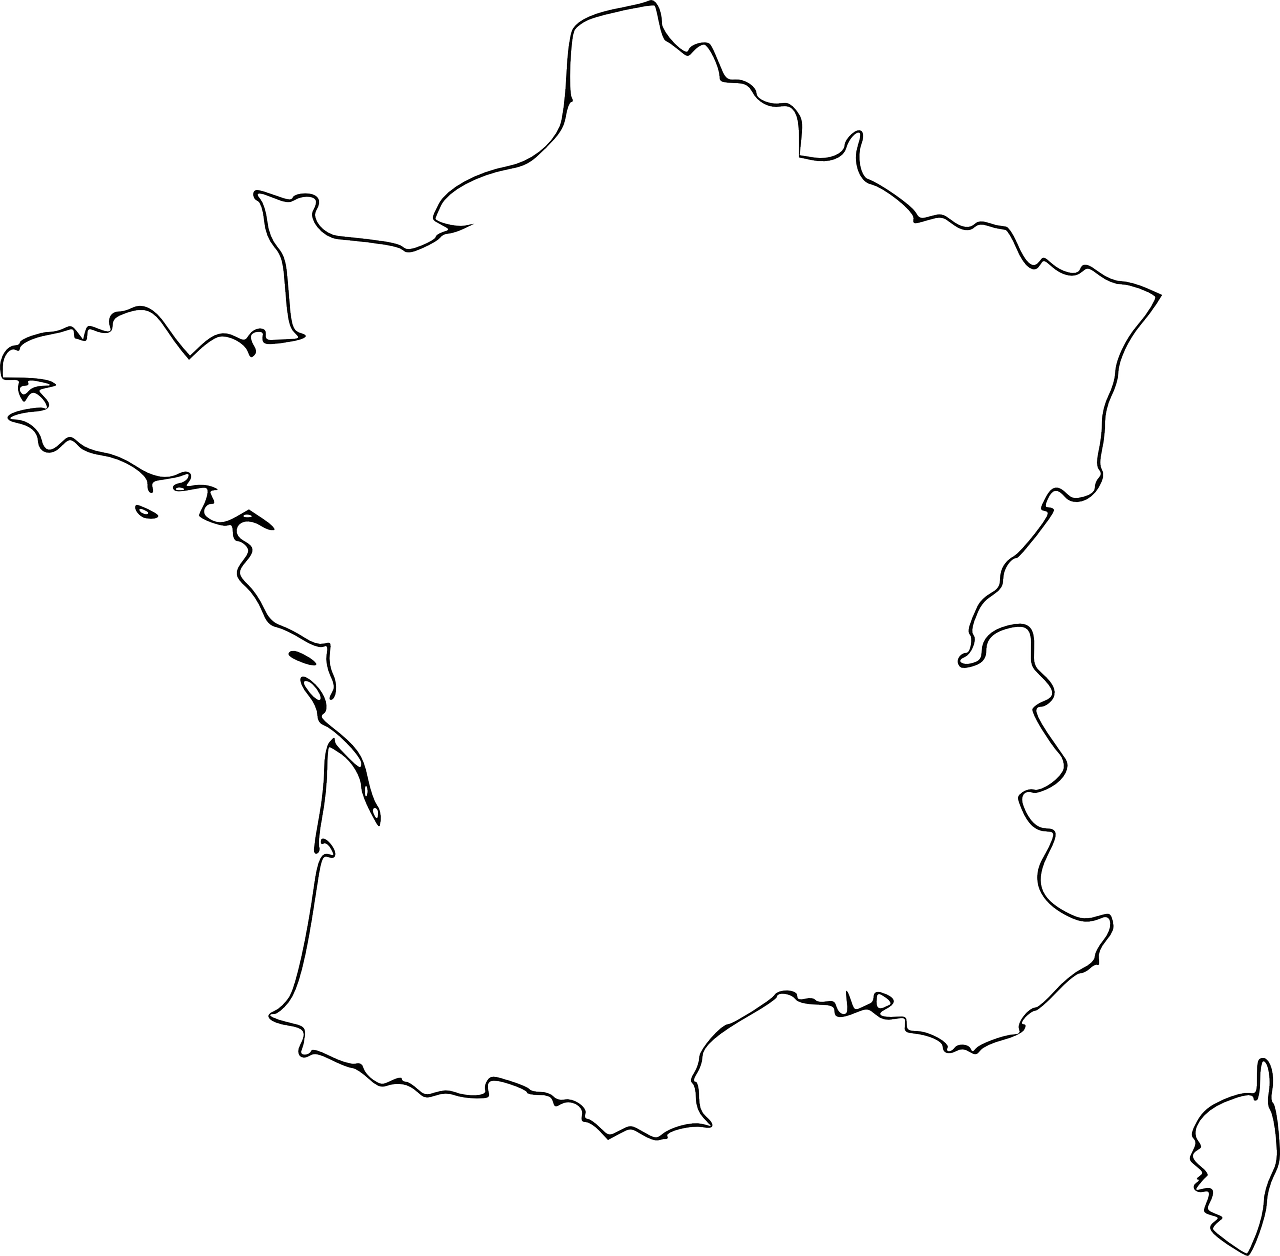 Download PNG image - France Map Vector PNG Transparent Image 